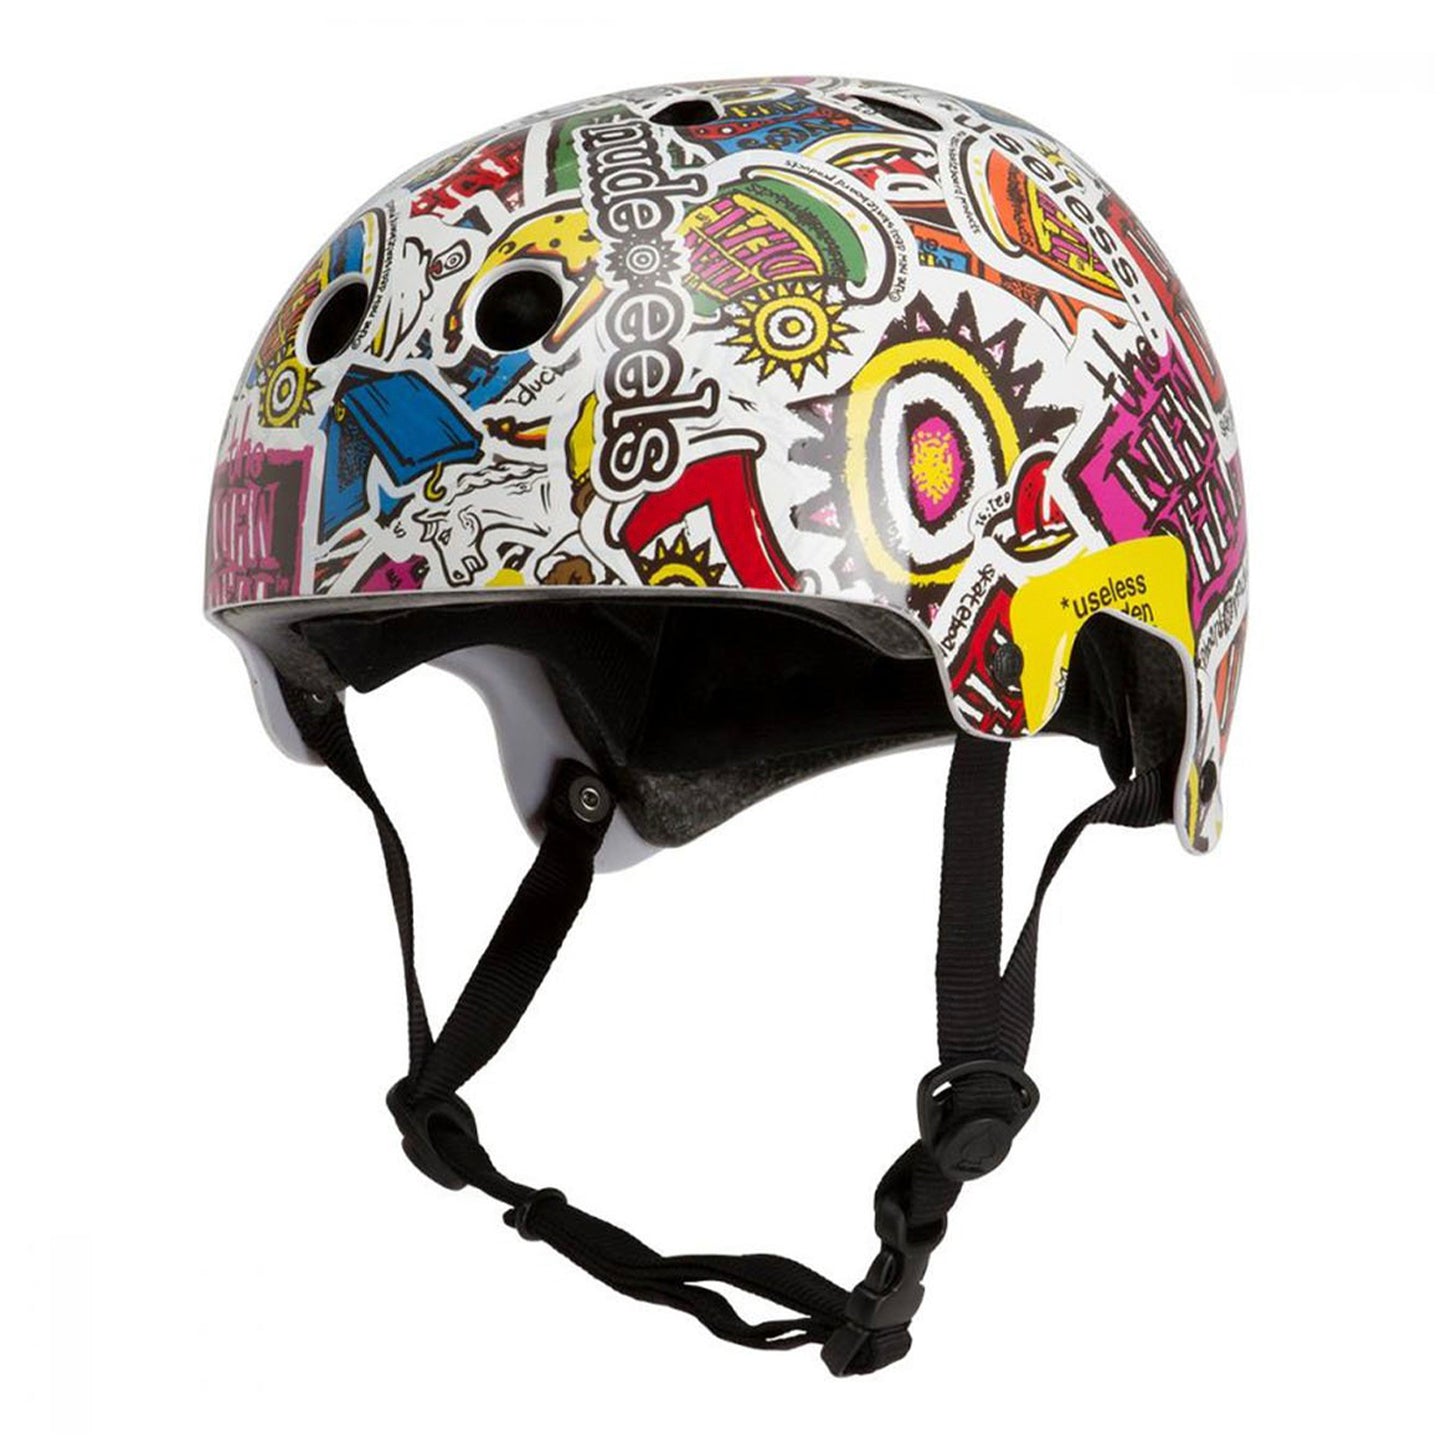 Pro-Tec Old School Certified Helmet - New Deal - Prime Delux Store